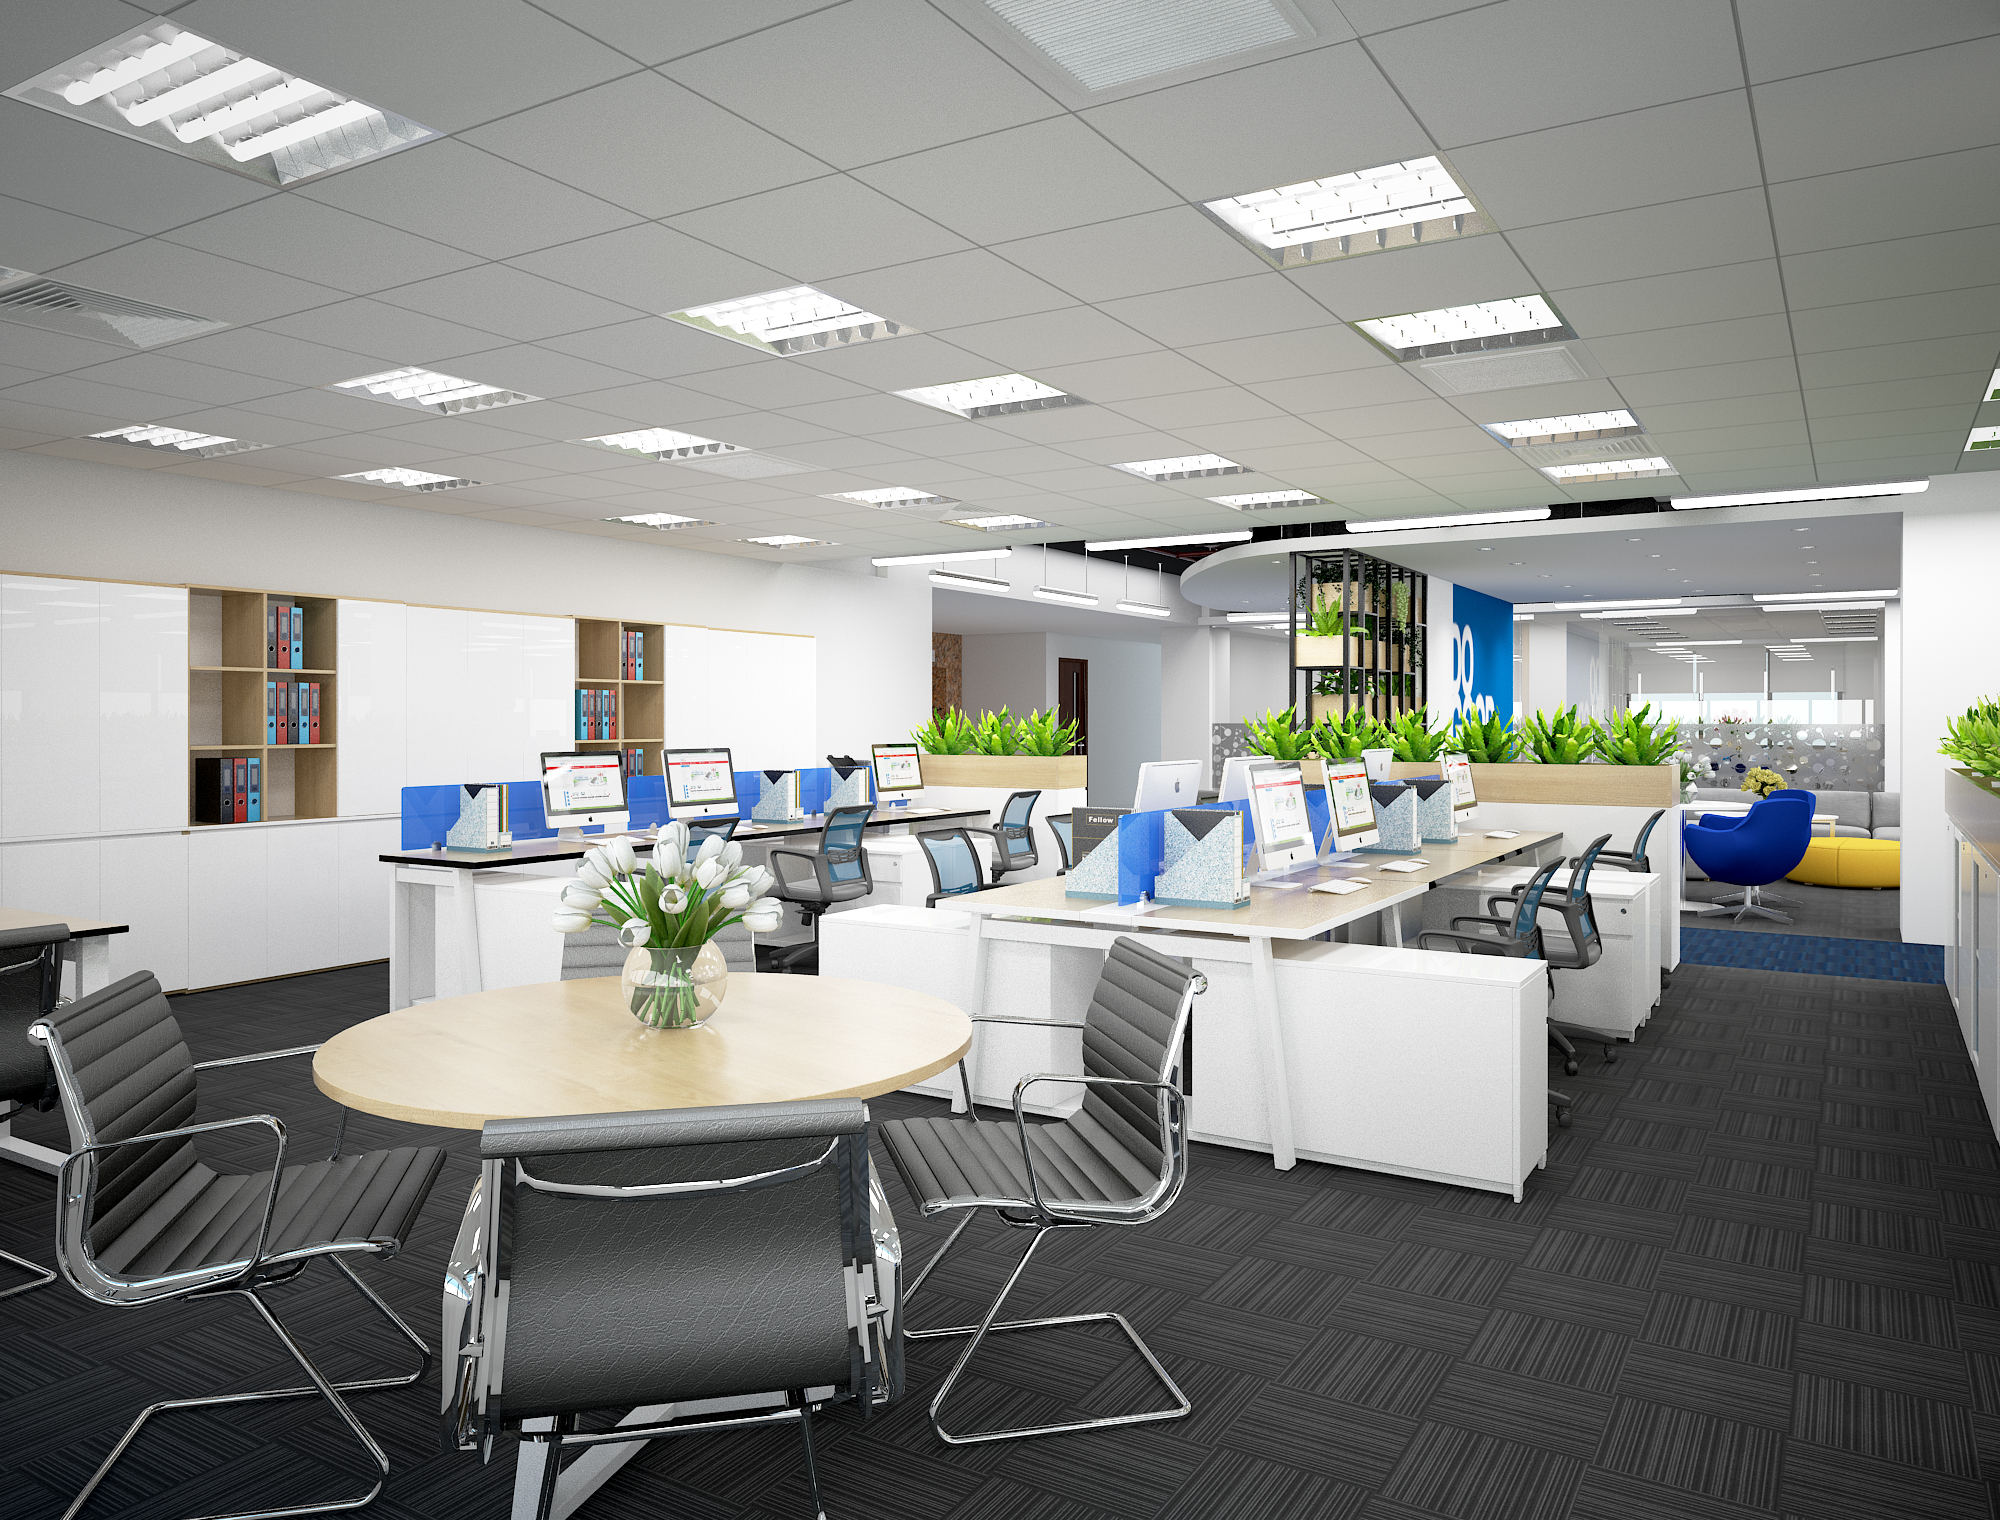 Nguyên tắc thiết kế nội thất văn phòng của chúng tôi là chú trọng vào sự tiện ích, tối ưu hóa không gian và luôn đáp ứng những yêu cầu của khách hàng. Chúng tôi đưa ra những ý tưởng trang trí và bố trí, giúp cho không gian văn phòng của doanh nghiệp trở nên thoải mái và thân thiện, mang lại hiệu quả làm việc tốt nhất.